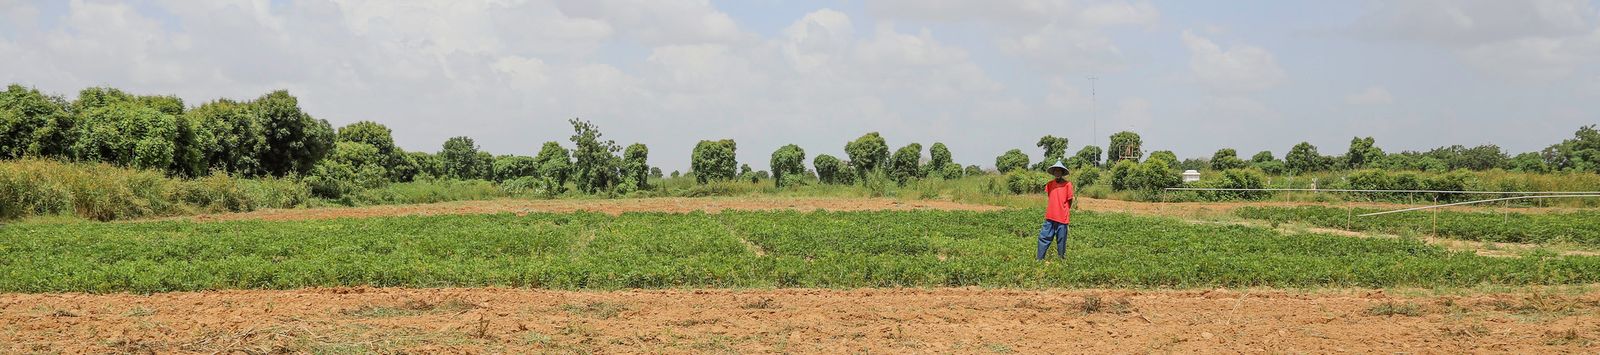 Producteur d’arachide, bénéficiaire du projet ABEE, dans une parcelle d’essai à Sibassor - Région de Kaolack au Sénégal - Octobre 2020 © J. G. Mandabrandja, DeCOM/CORAF 